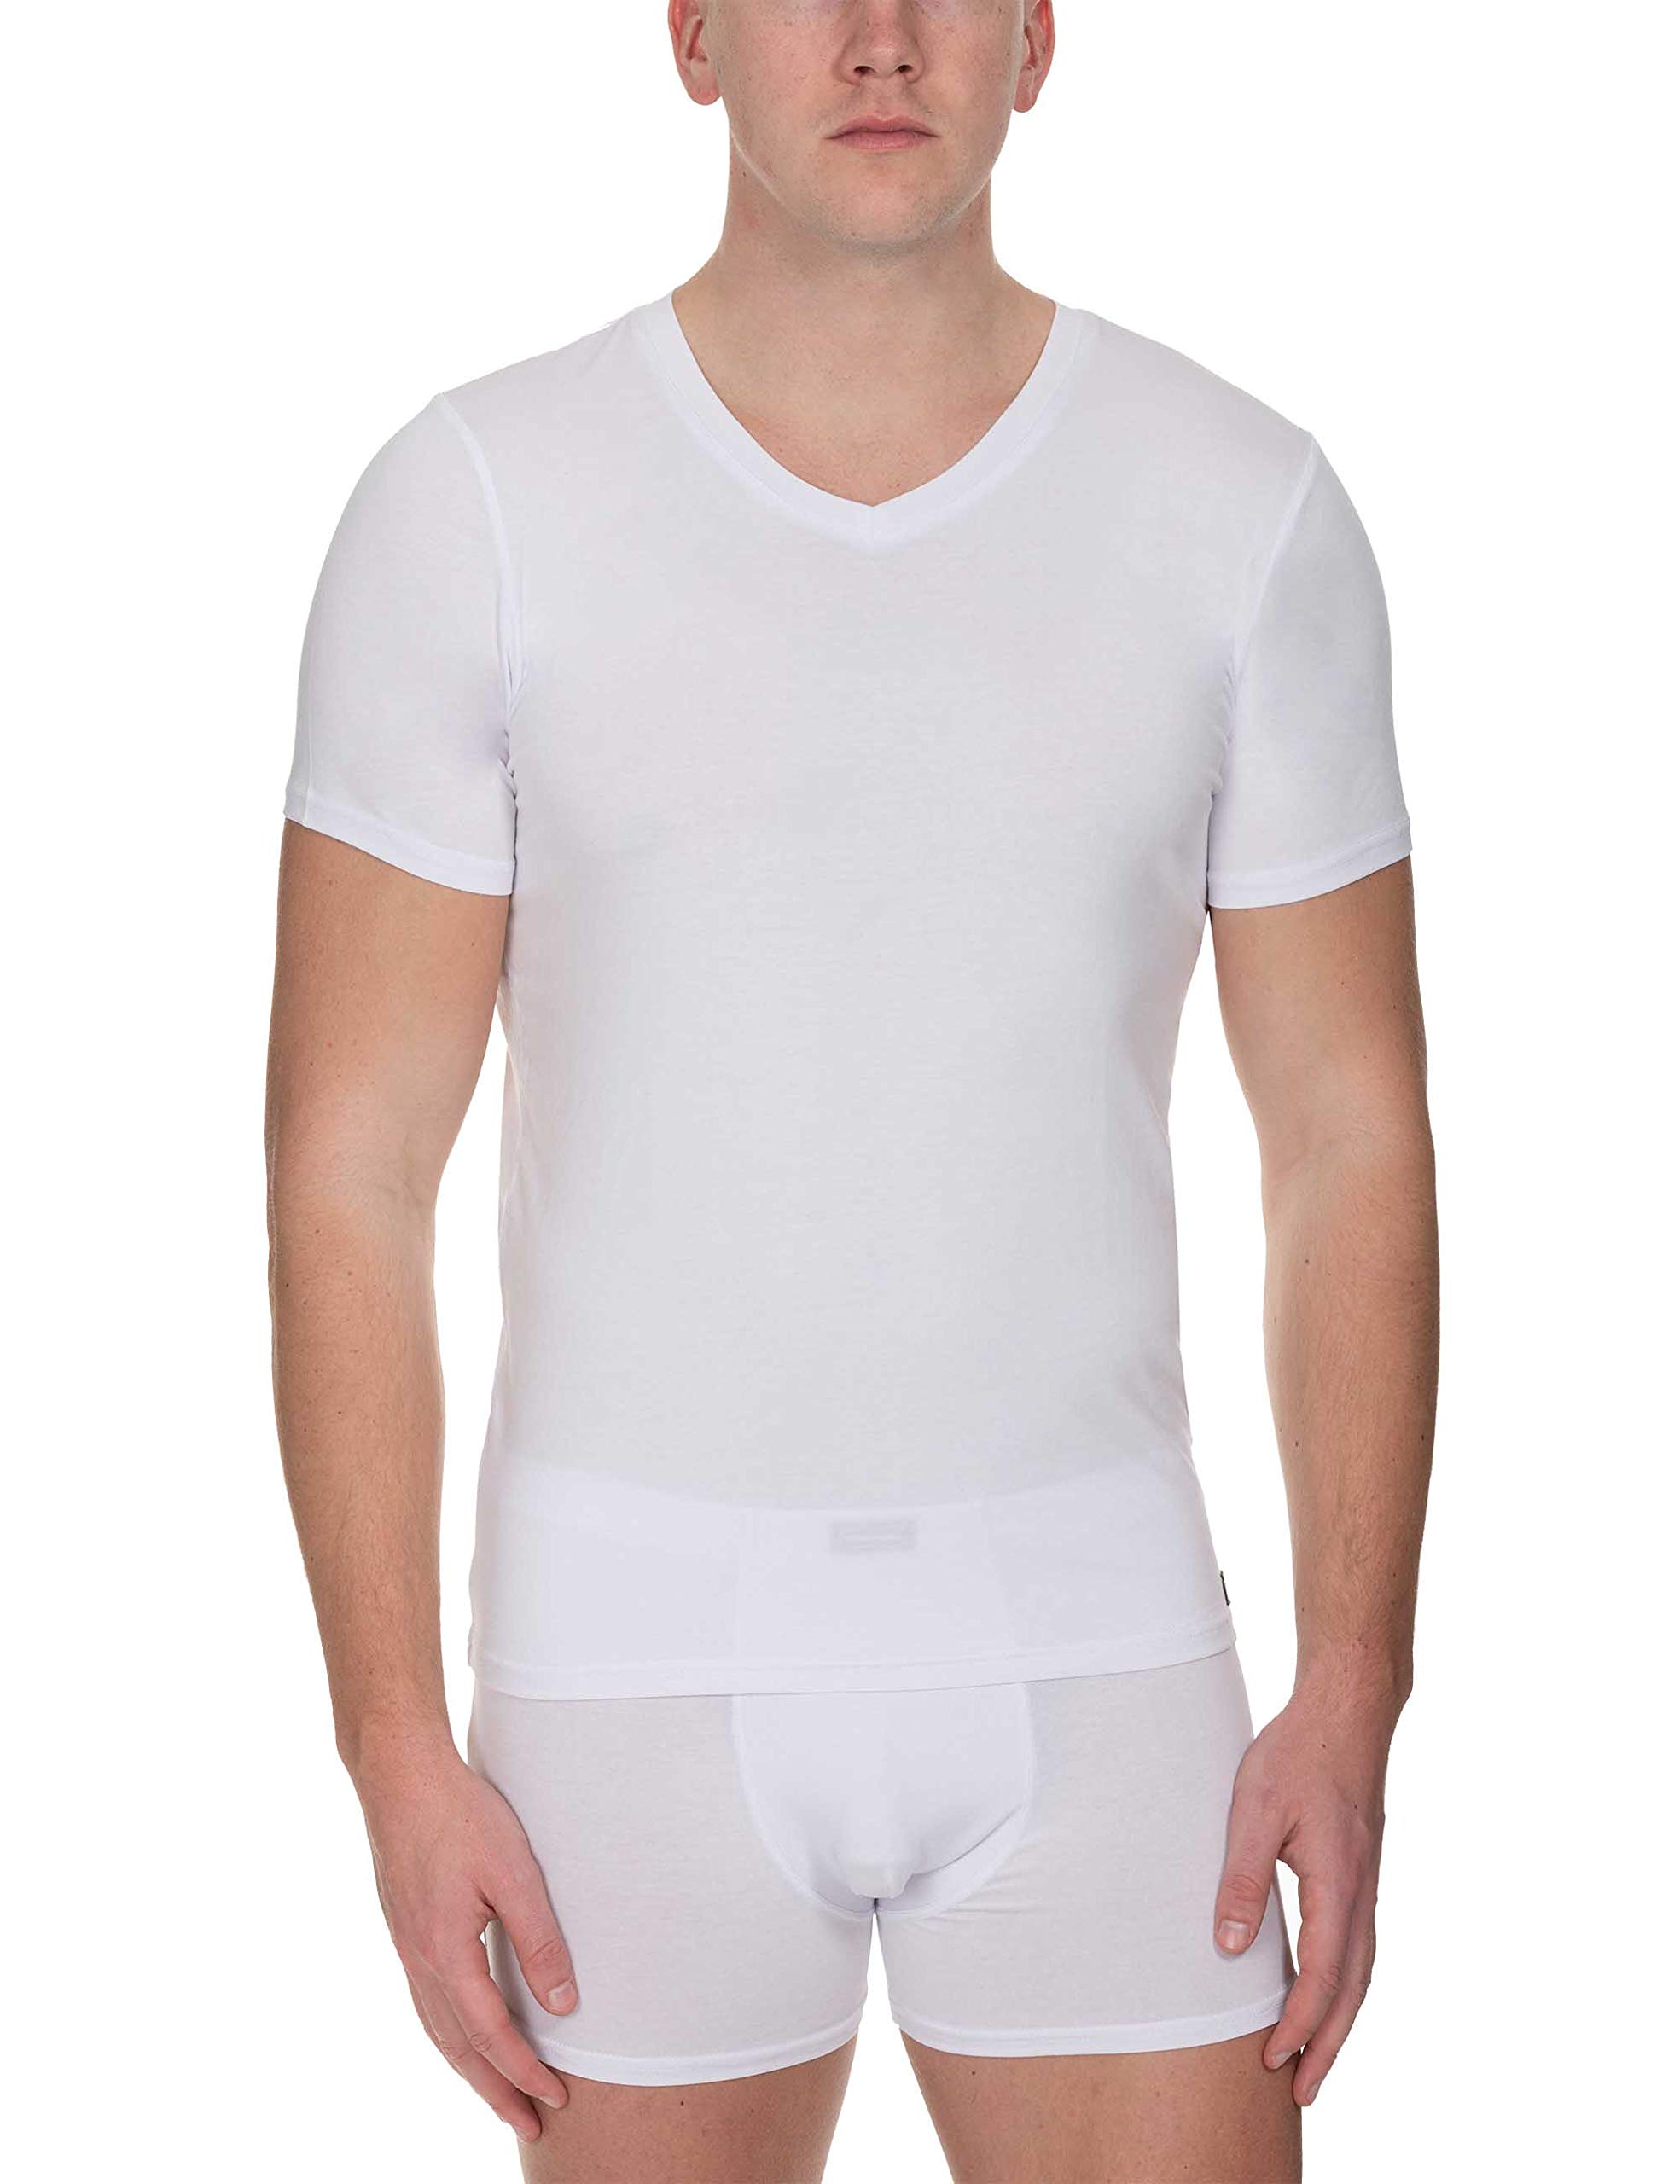 bruno banani Herren V-Shirt Infinity Unterhemd, Weiß (Weiß 001), X-Large (Herstellergröße: XL)